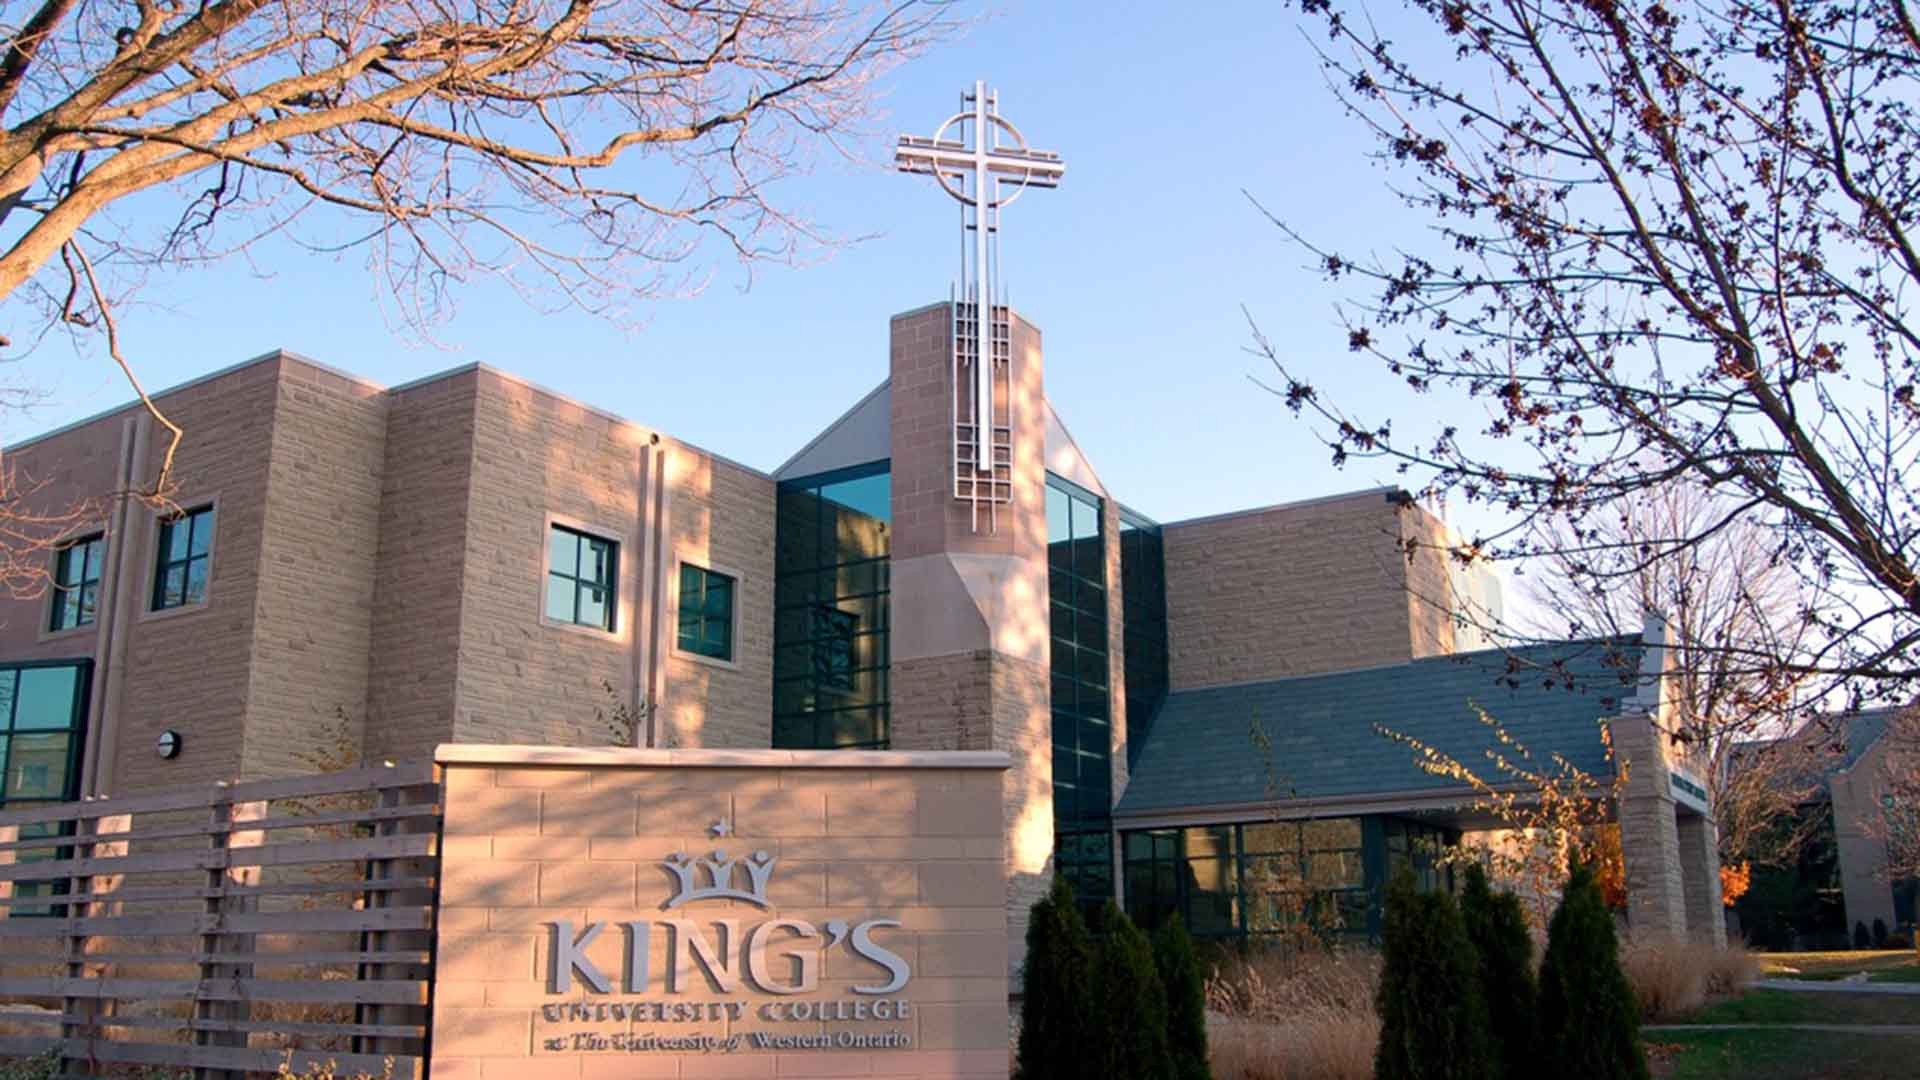 Vì sao nên chọn King’s University College khi bạn muốn du học cao đẳng Canada?